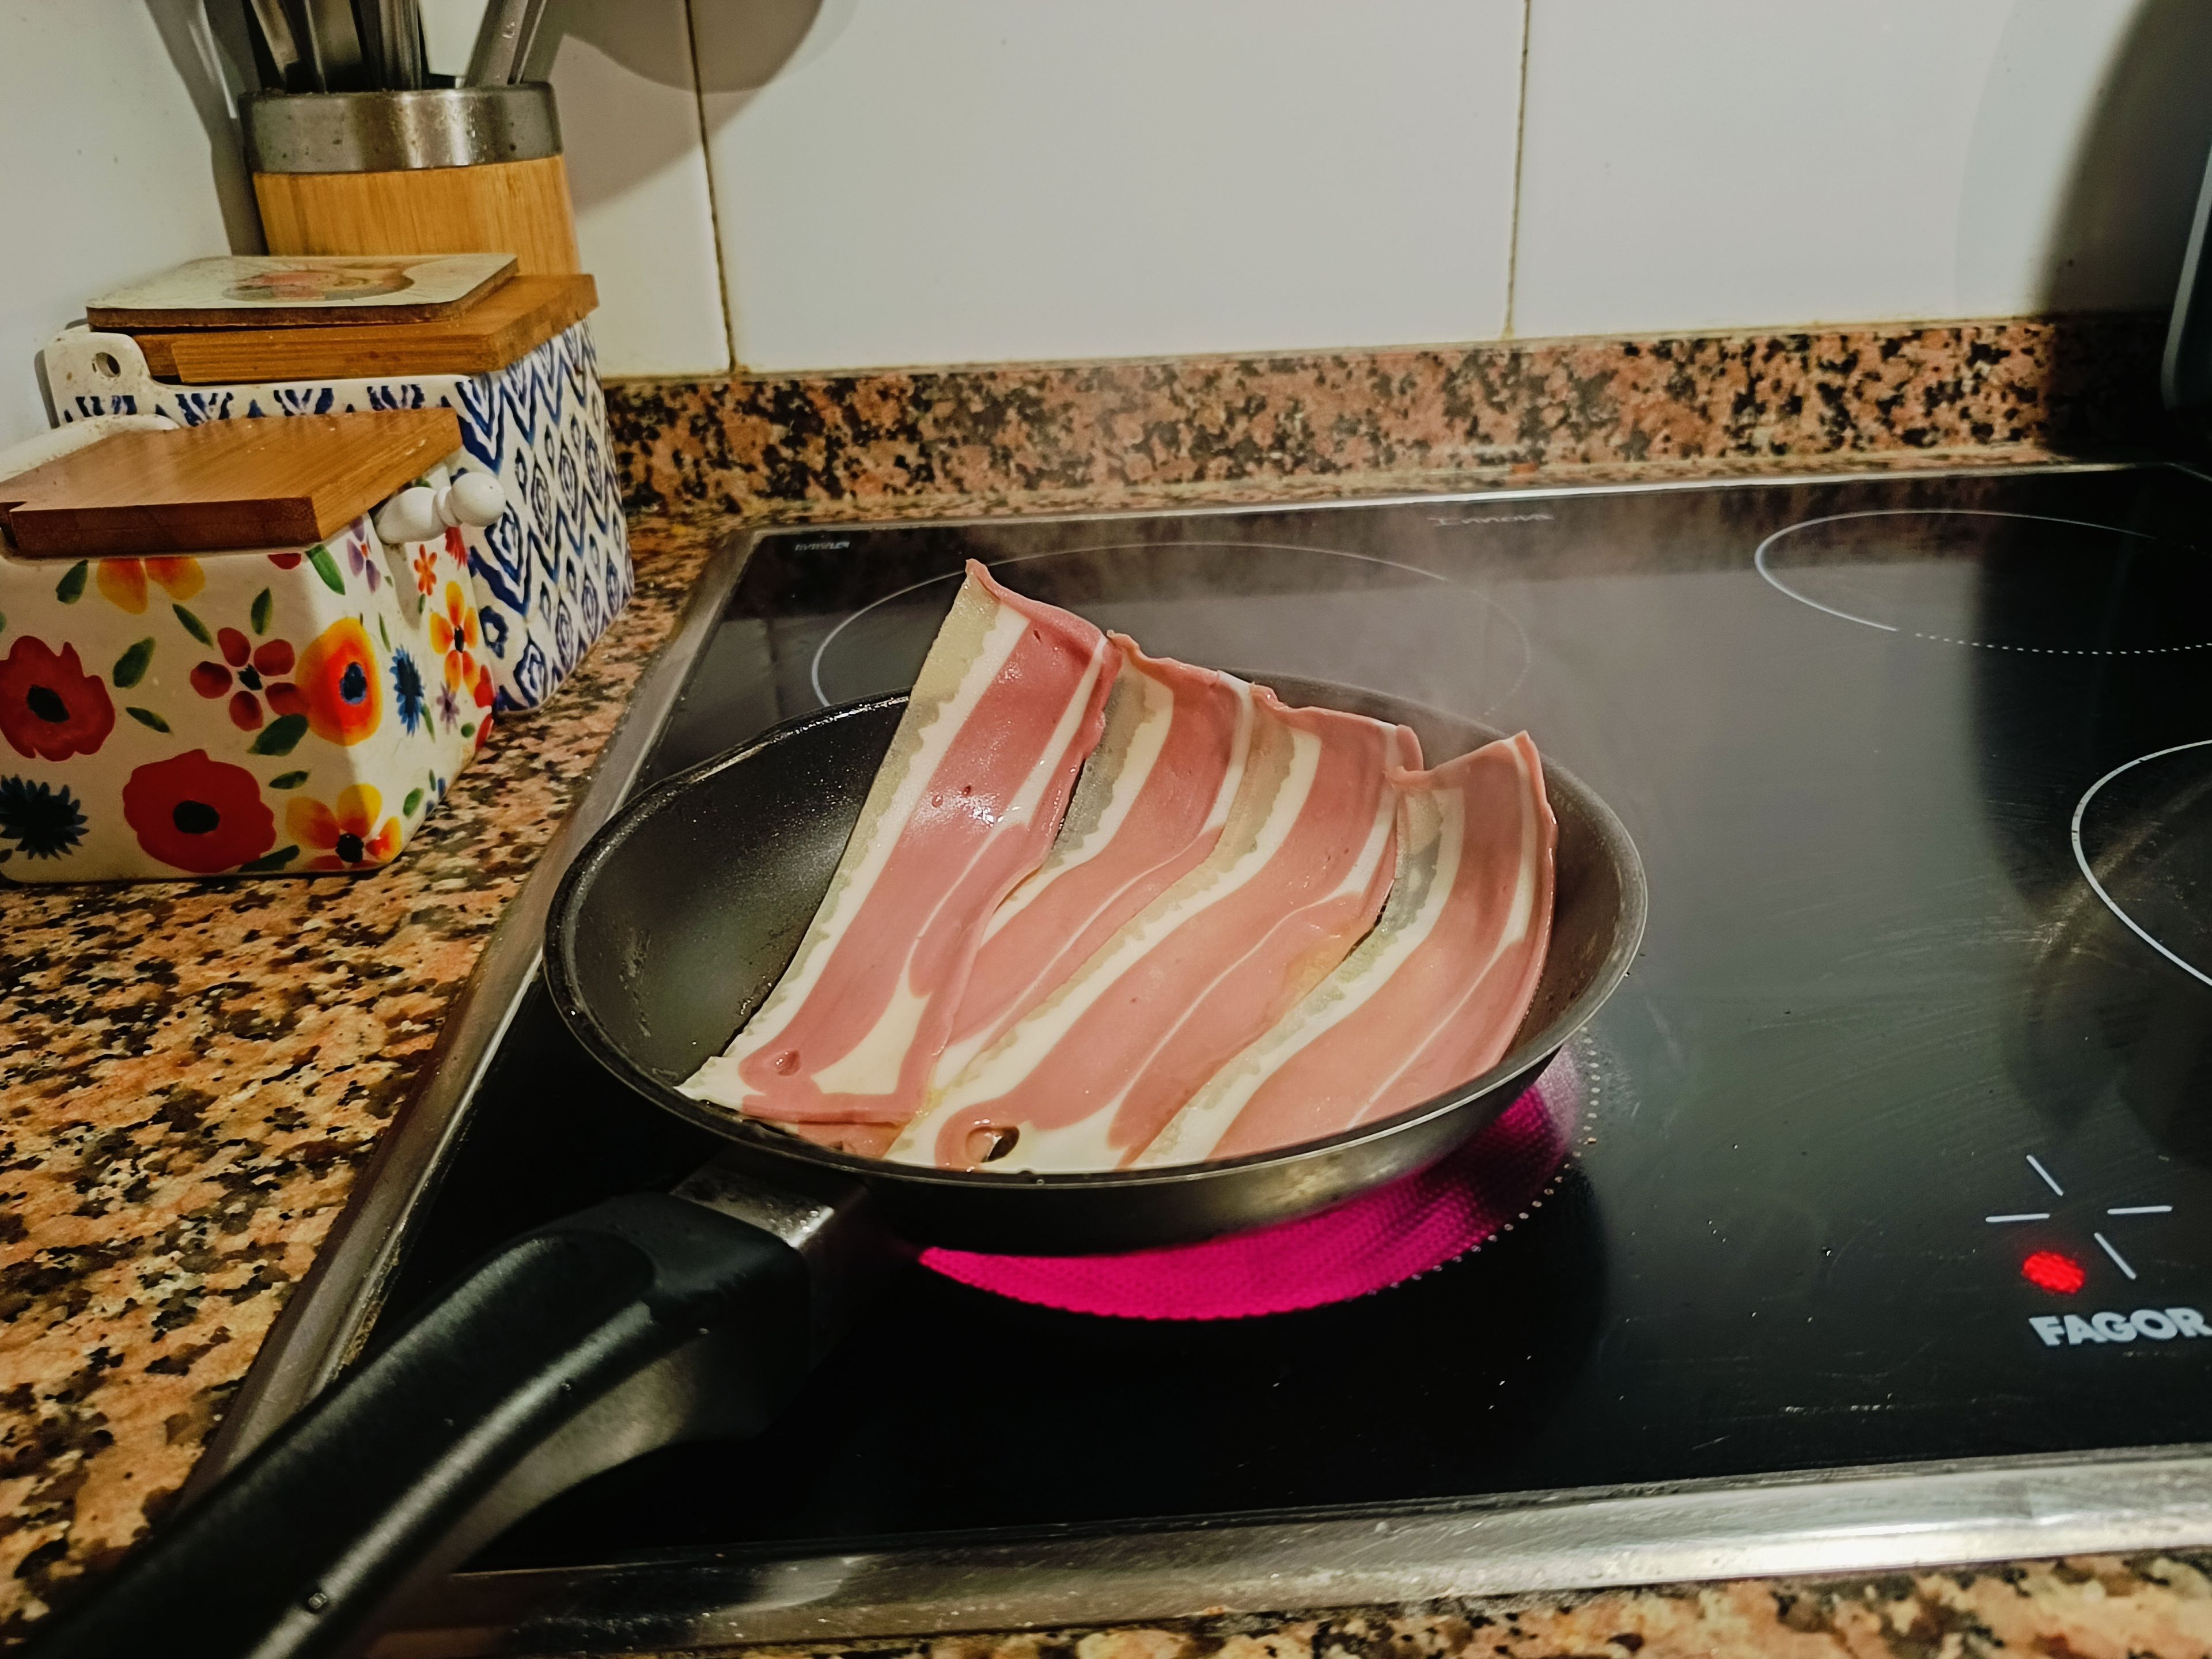 Me rugieron las tripas al oler el bacon chisporroteando.